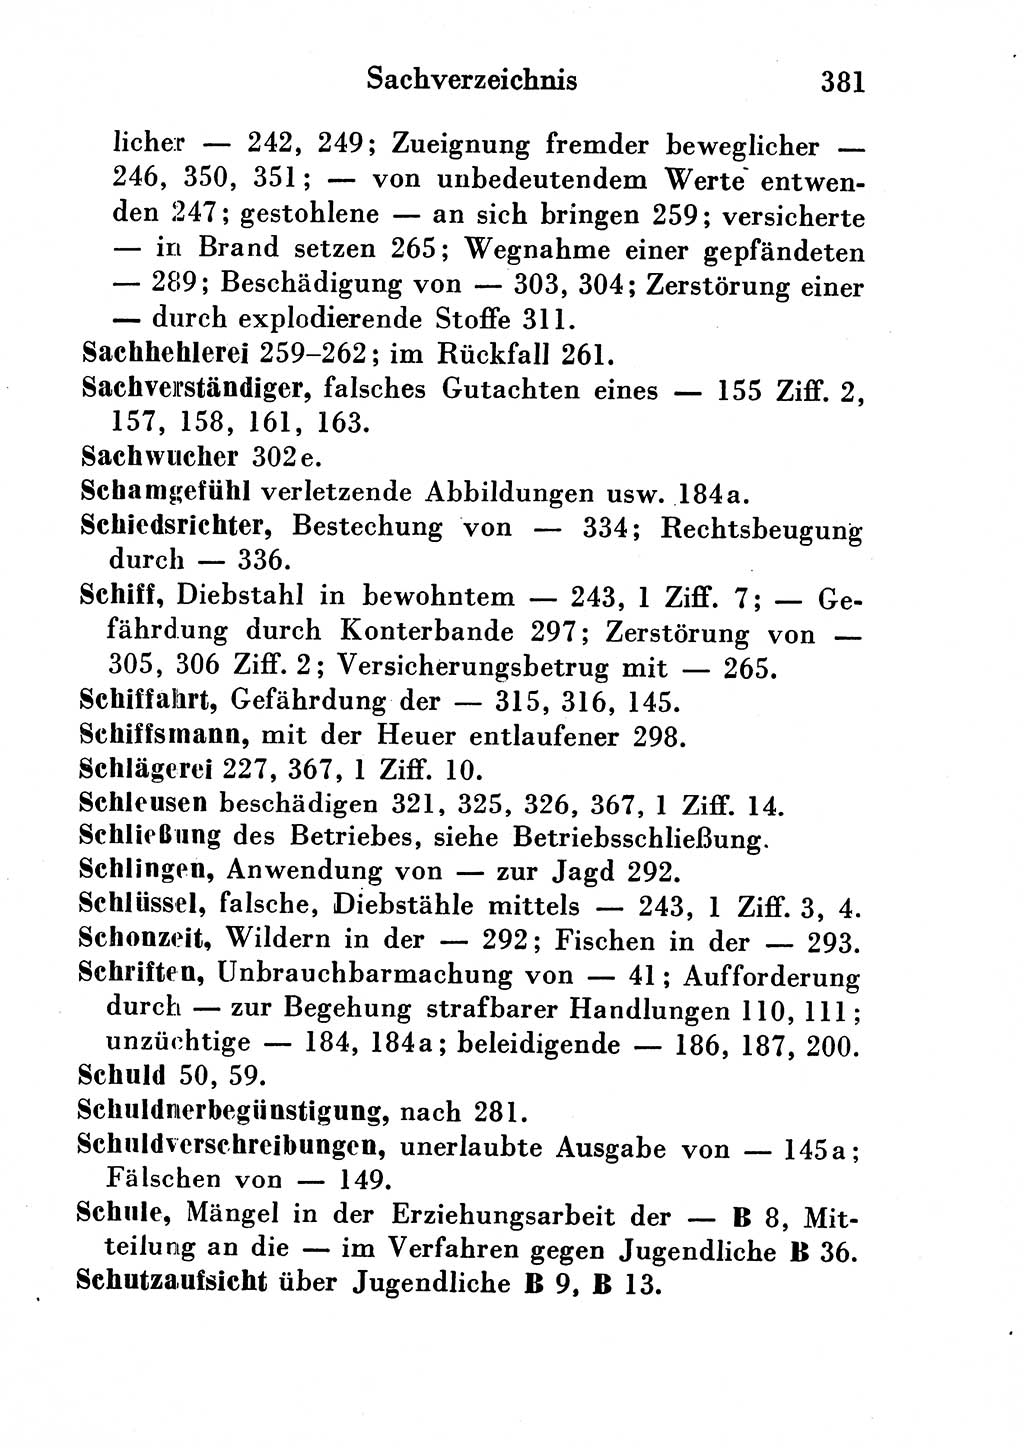 Strafgesetzbuch (StGB) und andere Strafgesetze [Deutsche Demokratische Republik (DDR)] 1954, Seite 381 (StGB Strafges. DDR 1954, S. 381)